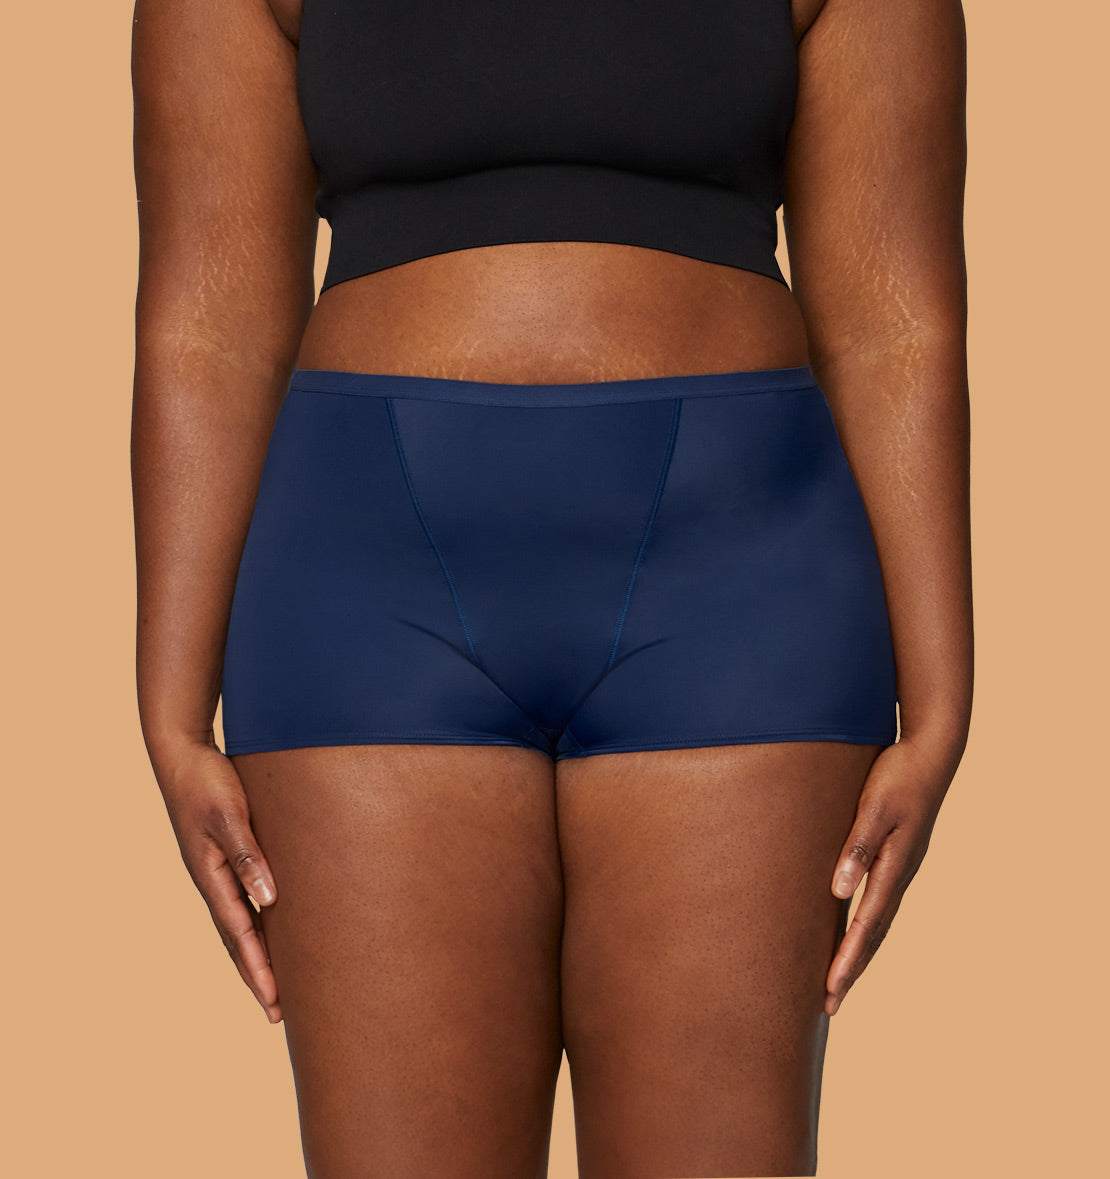 thinx heavy boyshort period underwear - navy in sizes xxs-4x undies